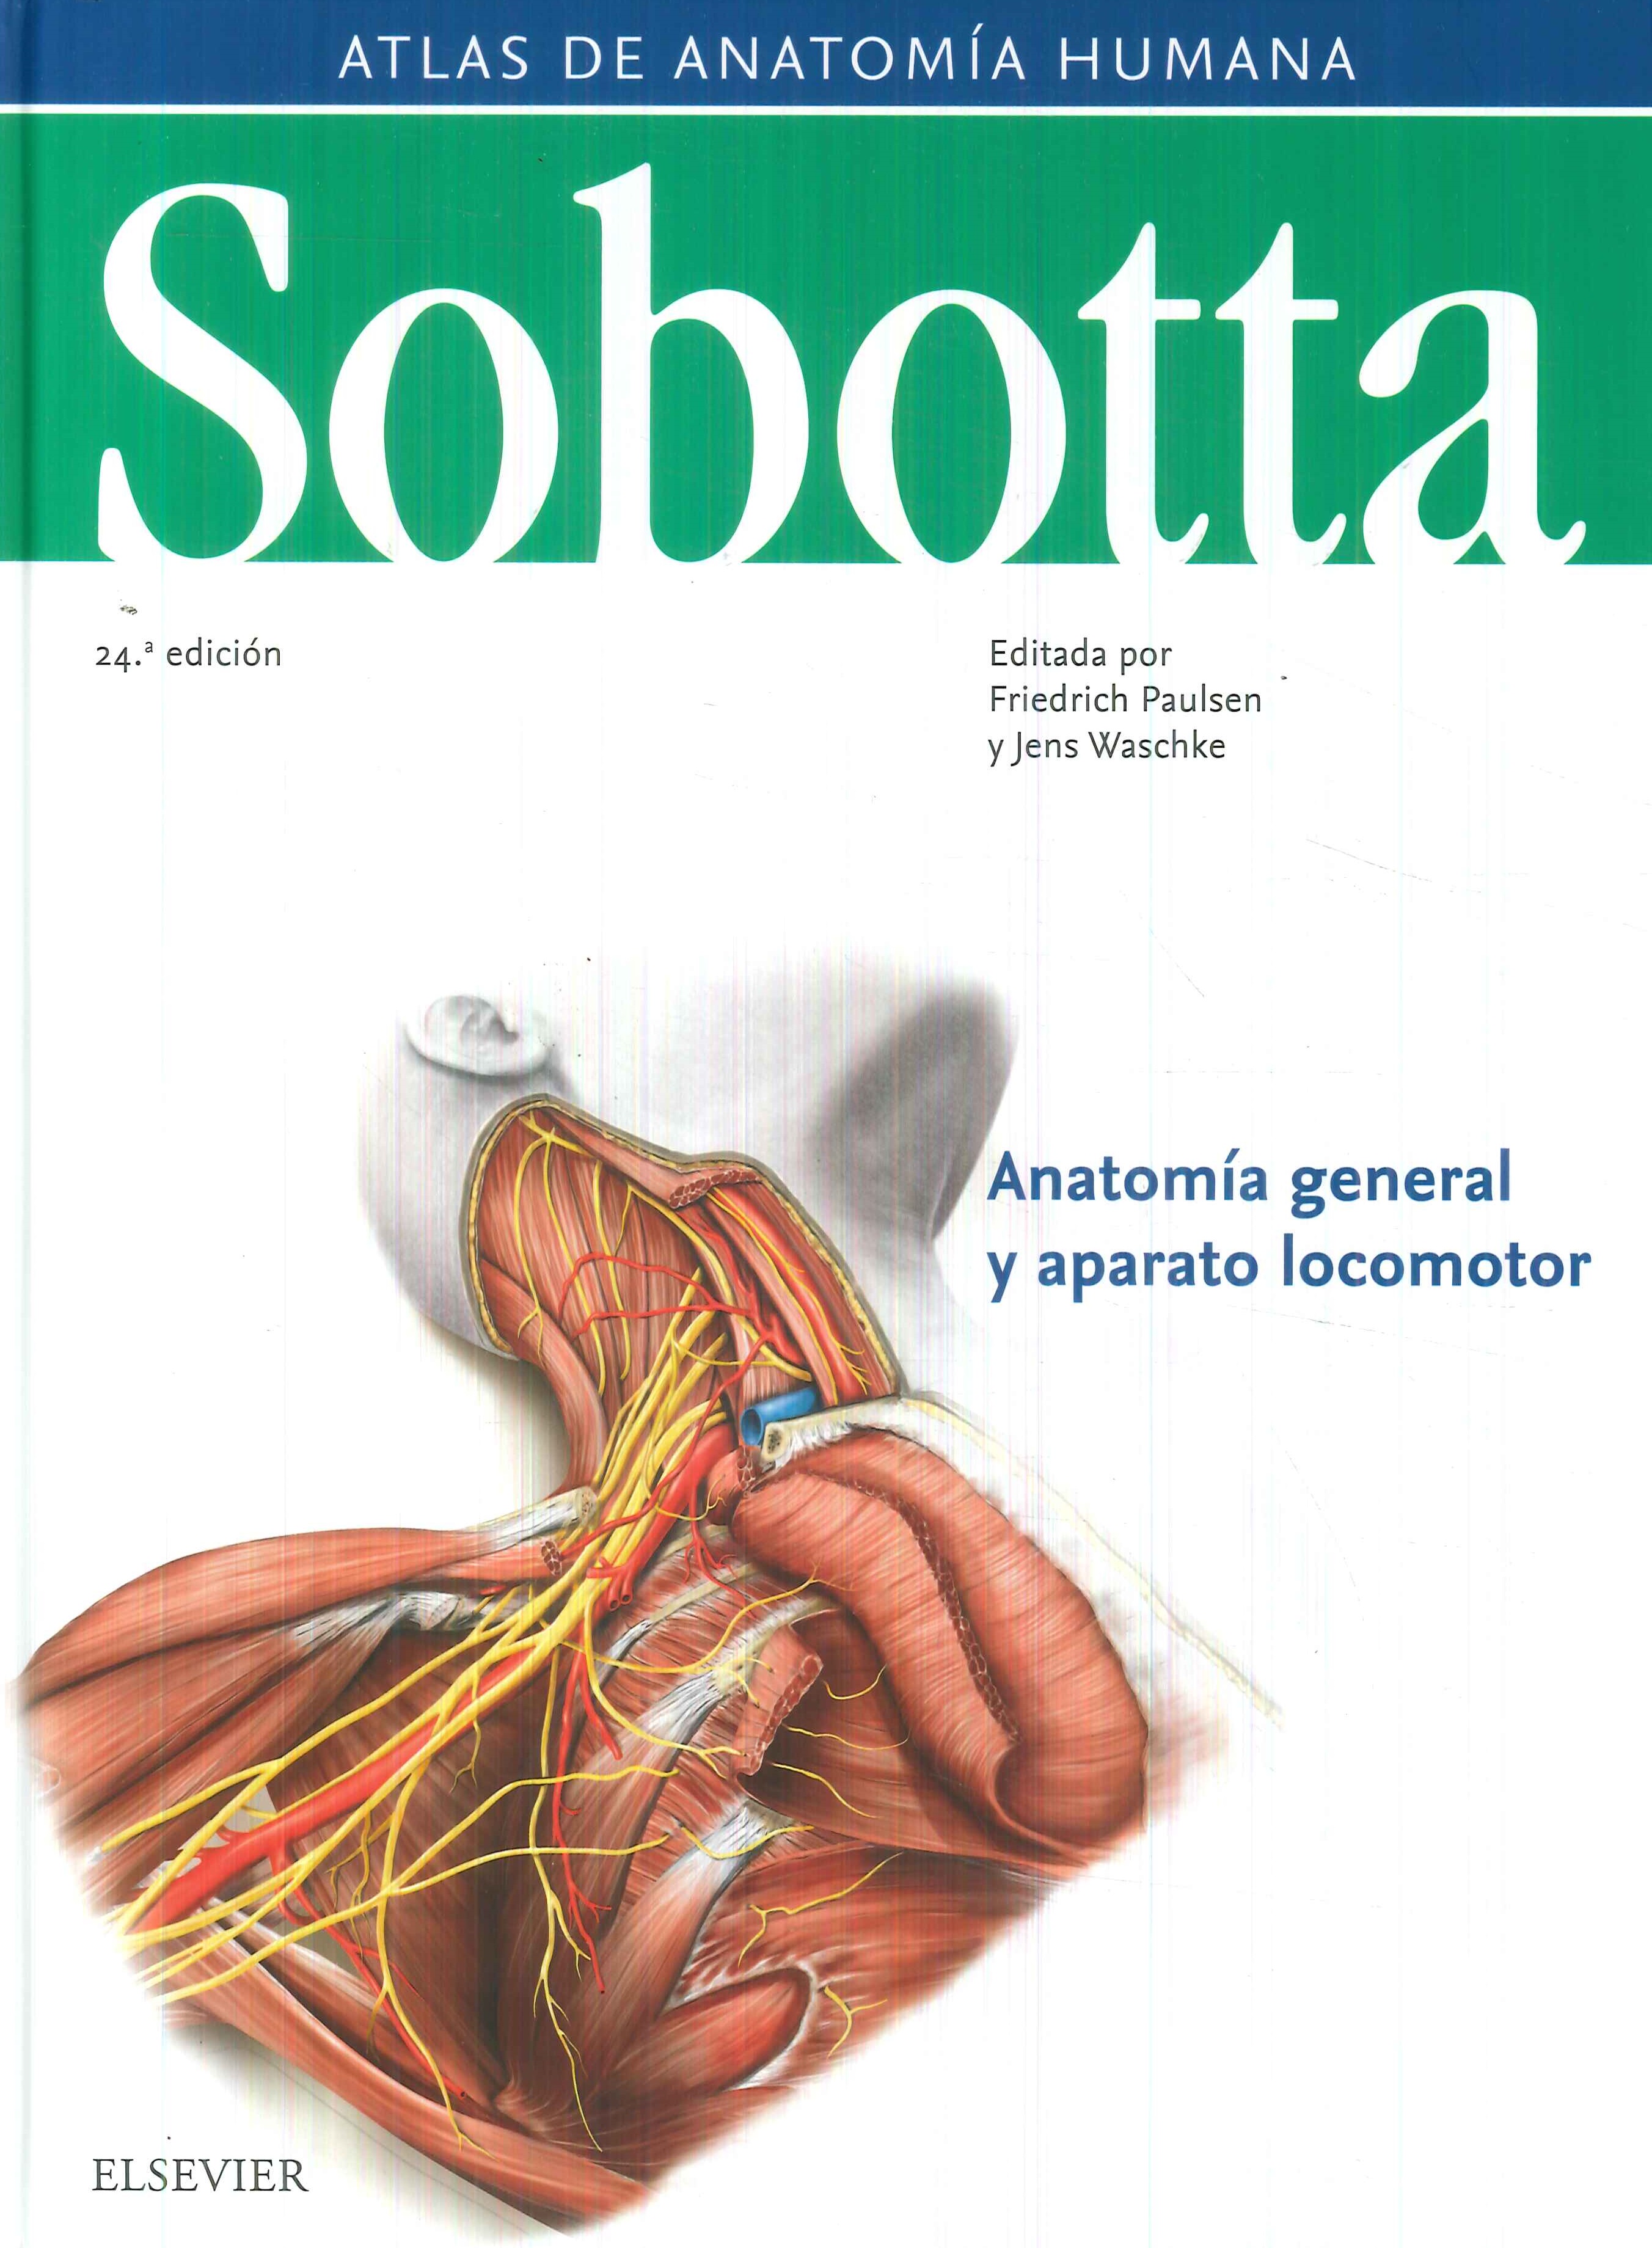 Atlas de Anatomía Humana 3 Tomos + Tabla Sobotta